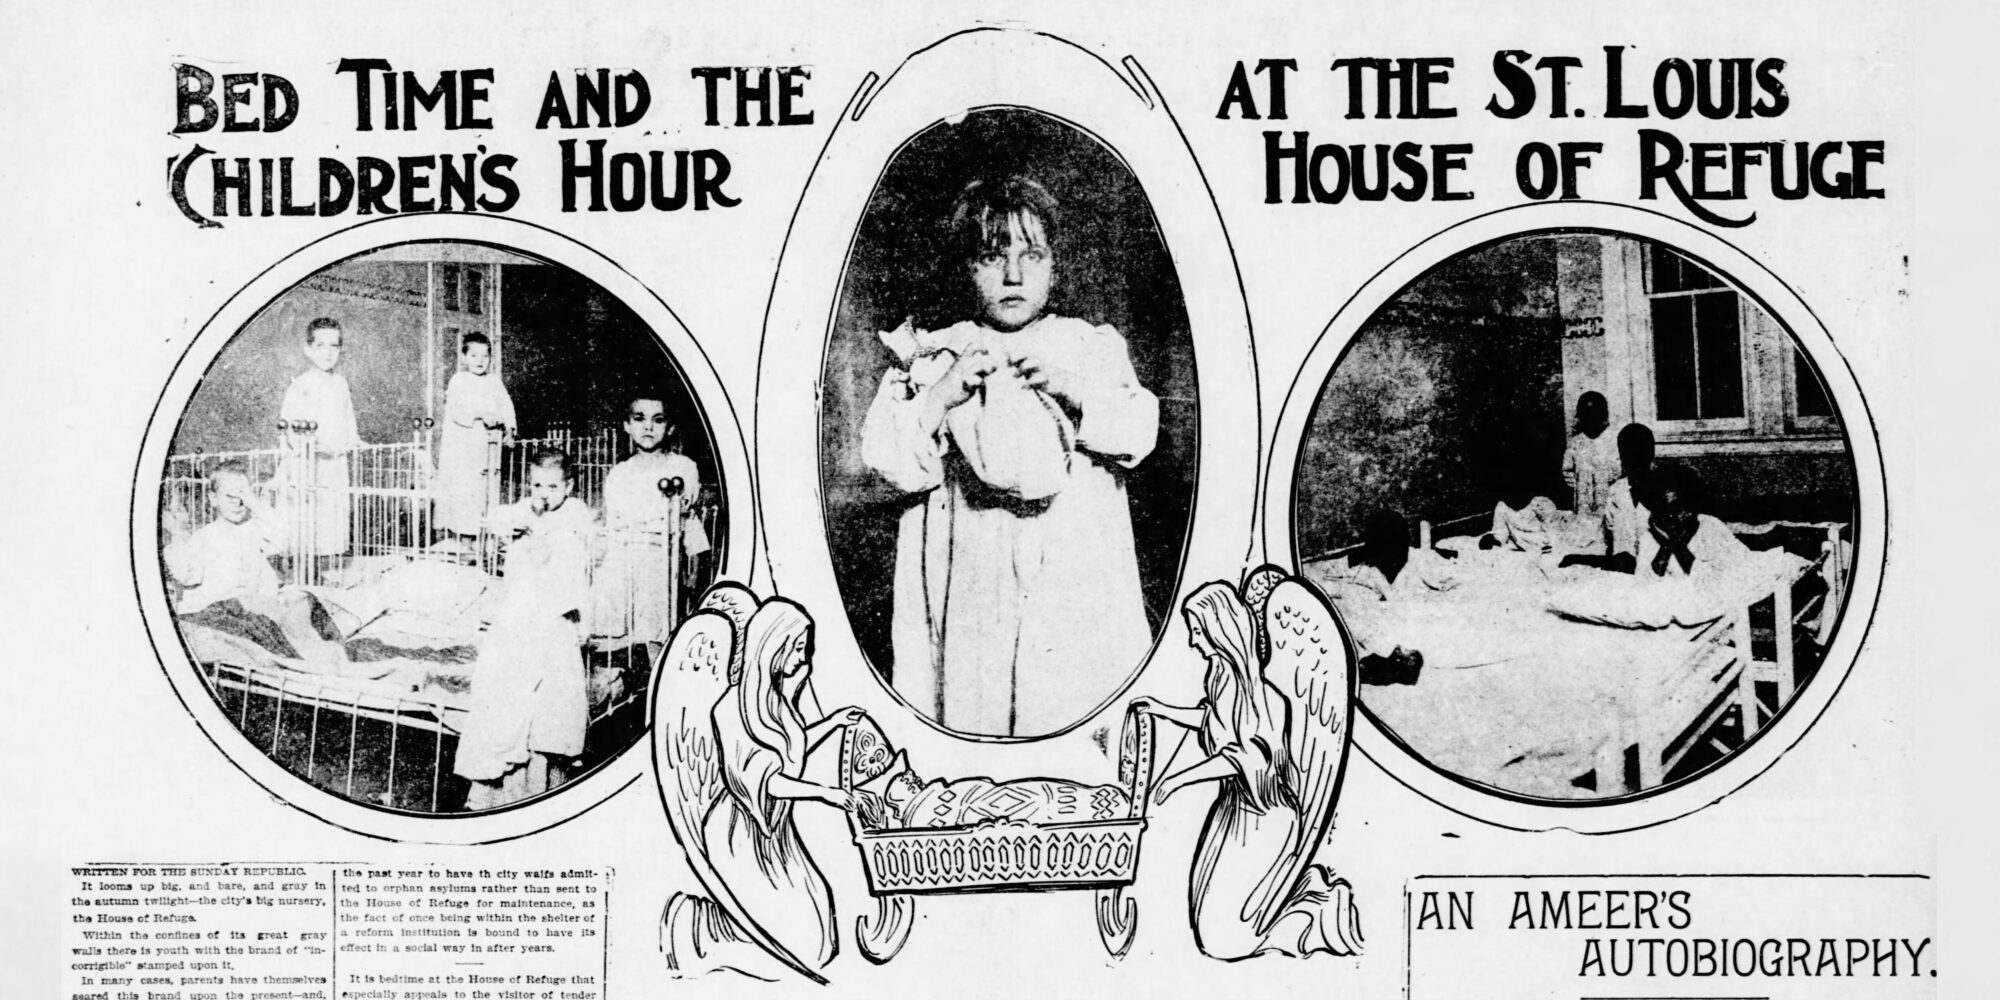 بریده ای از نسخه 3 نوامبر 1901 جمهوری سنت لوئیس با عنوان "زمان خواب و ساعت کودکان در خانه پناهگاه سنت لوئیس". این تصویر شامل عکس‌هایی از کودکانی است که لباس خواب بر روی تخت می‌پوشند و نقاشی دو فرشته که یک حوض را تکان می‌دهند.